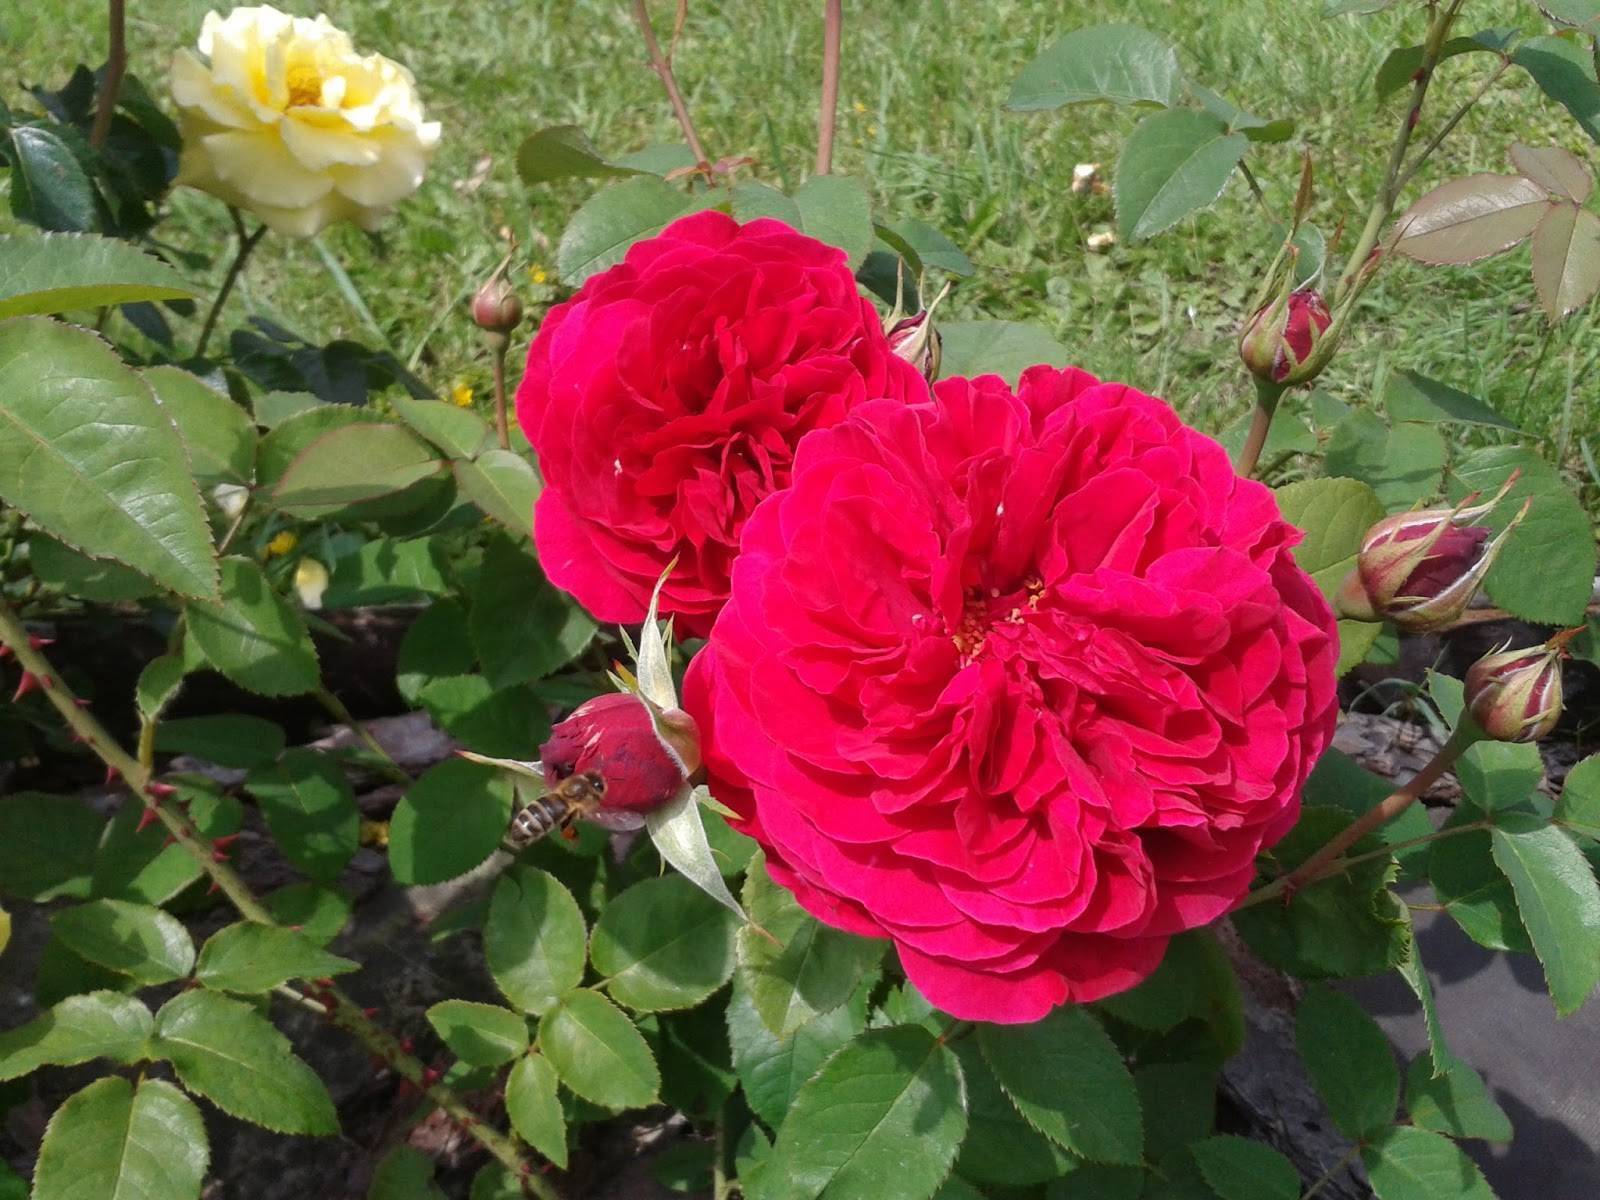 Описание розы джеймс галвей из коллекции остина- что это за сорт, как выращивать - veela